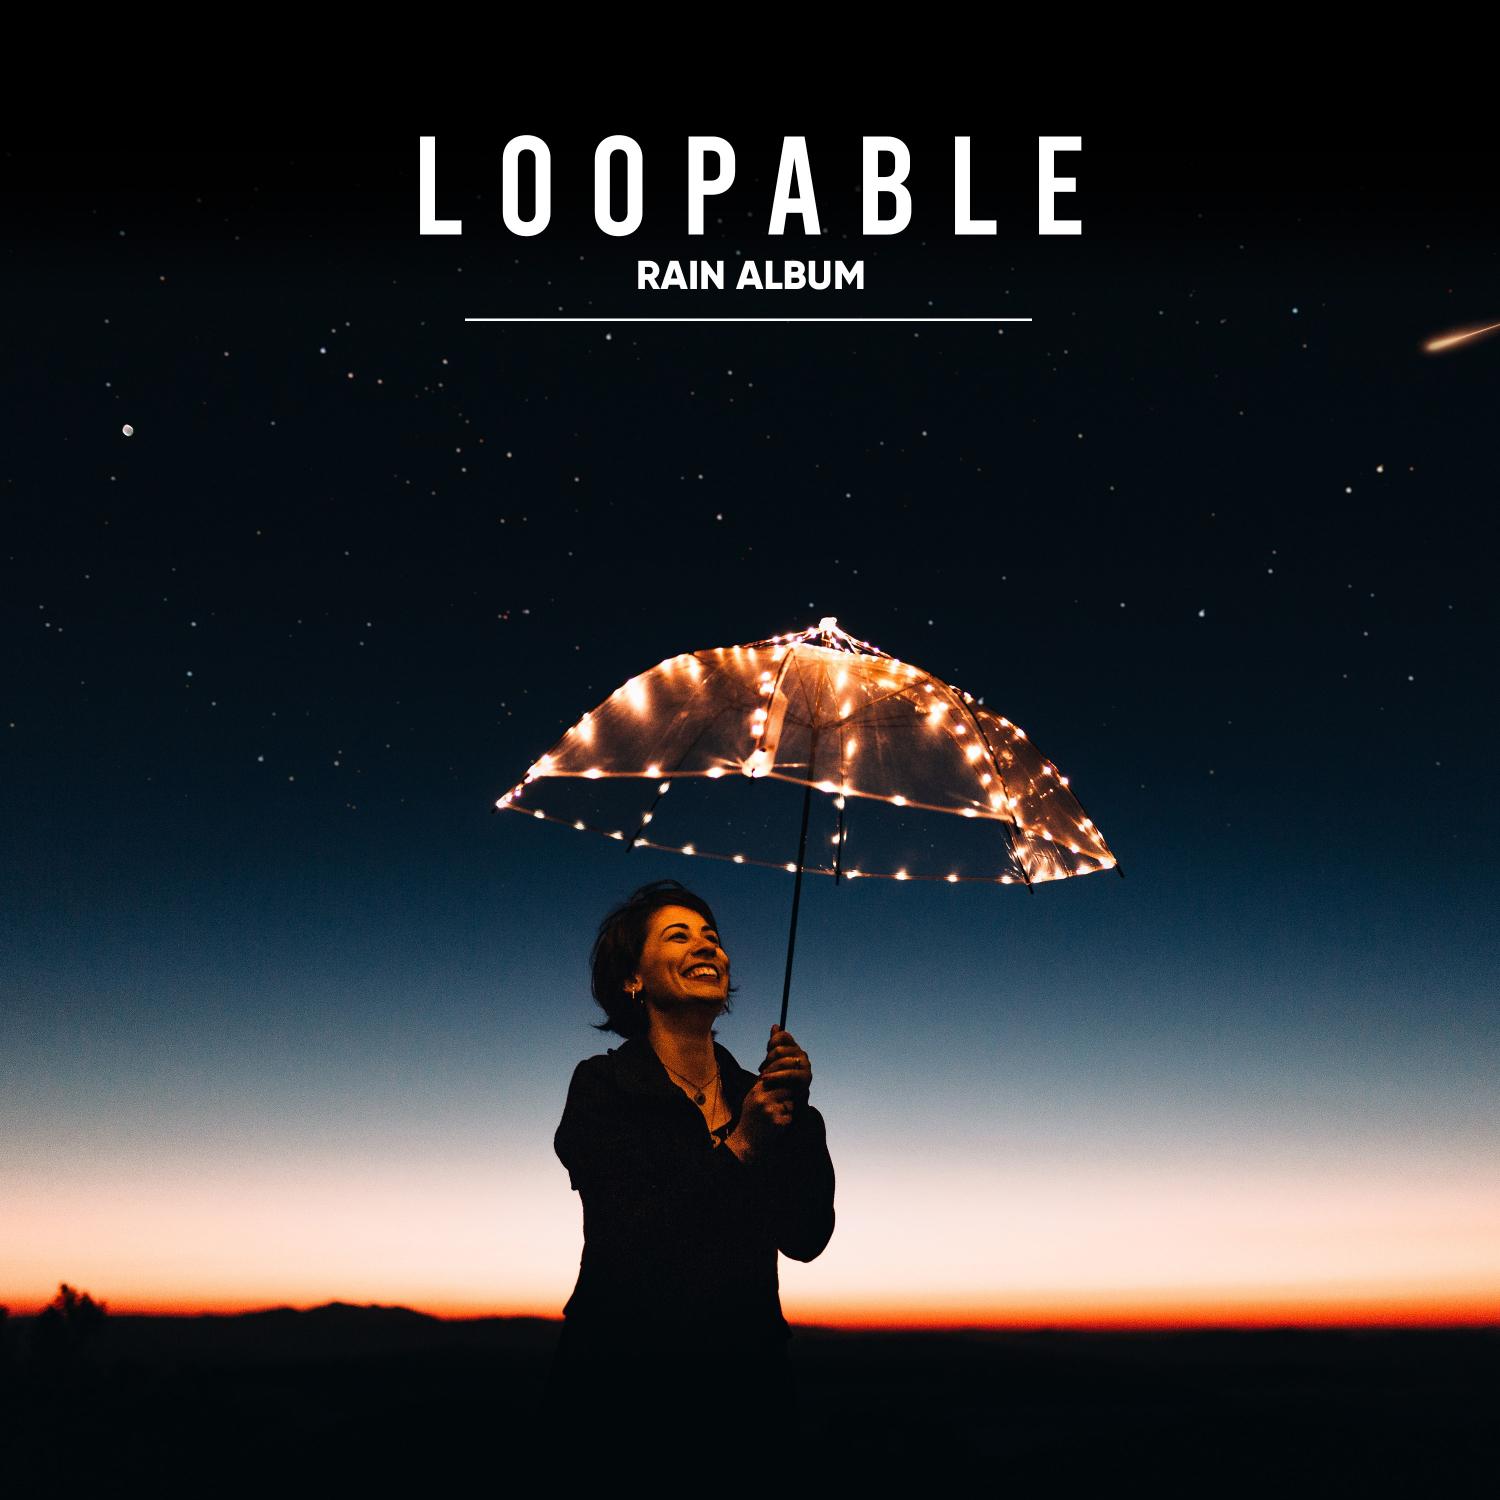 15 Loopable Rain Album for Baby Sleep Aid